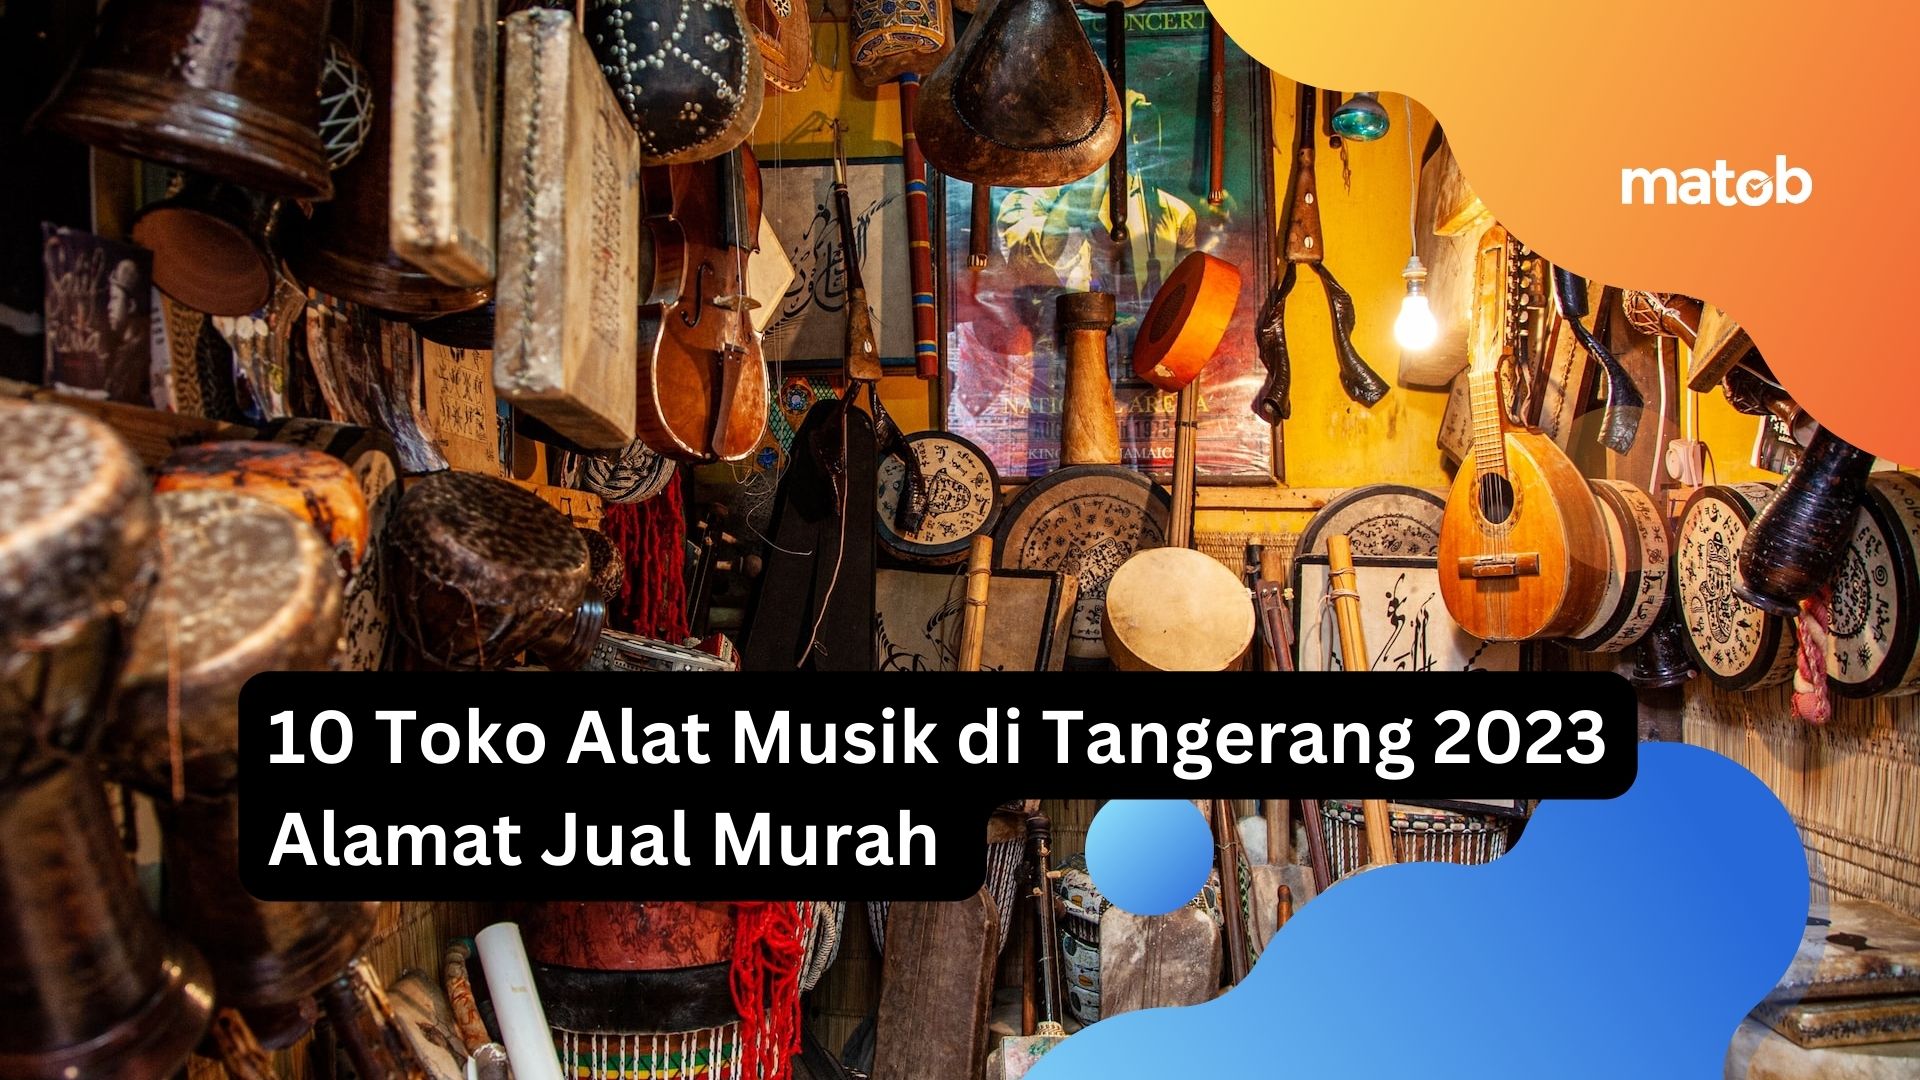 10 Toko Alat Musik di Tangerang 2023 Alamat Jual Murah